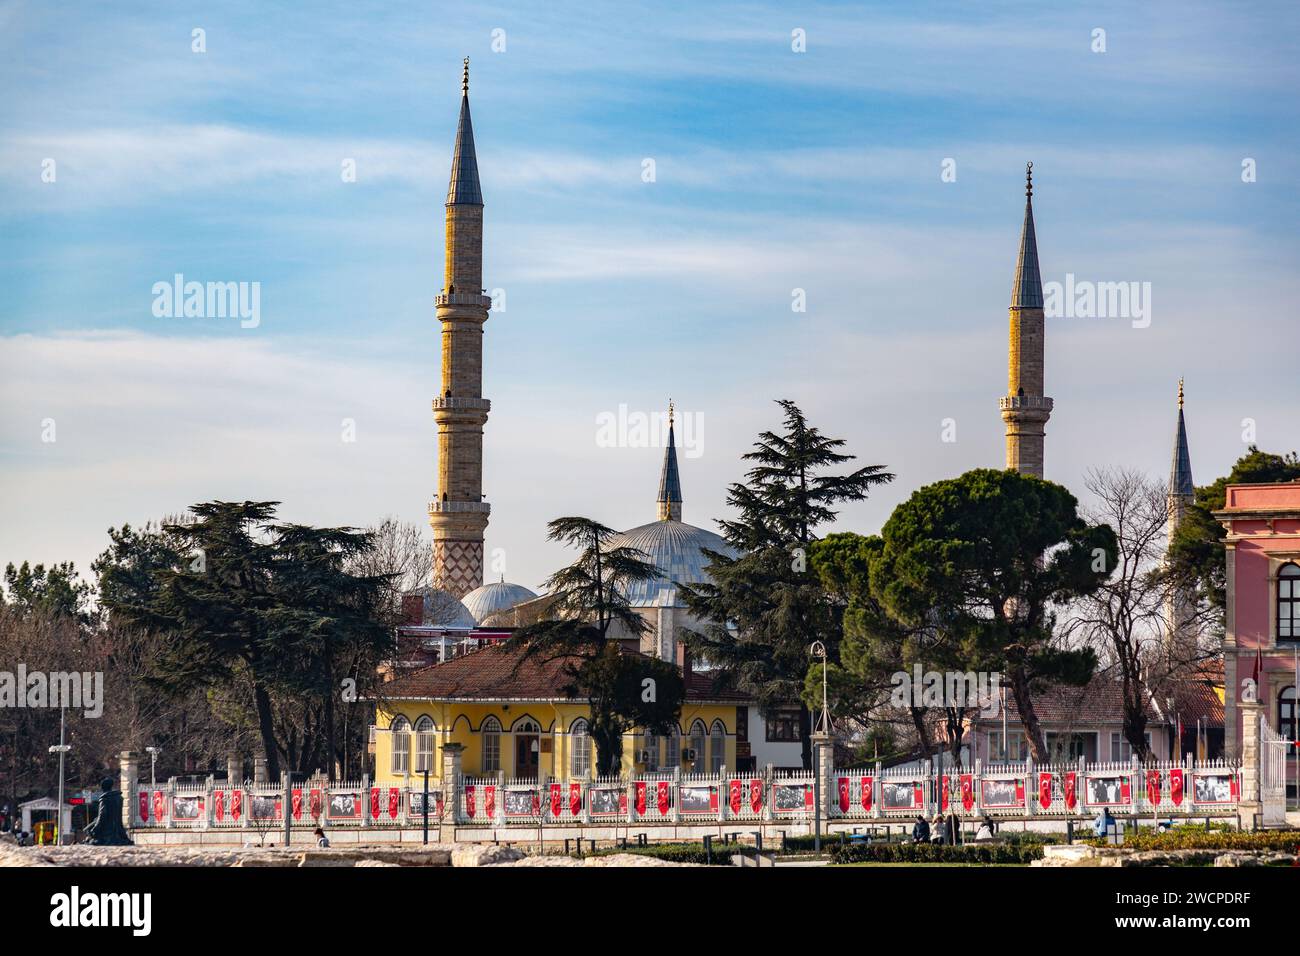 Edirne, Turkiye - 14 janvier 2024 : la mosquée UC Serefeli est une mosquée ottomane du 15e siècle située à Edirne, en Turquie. Banque D'Images